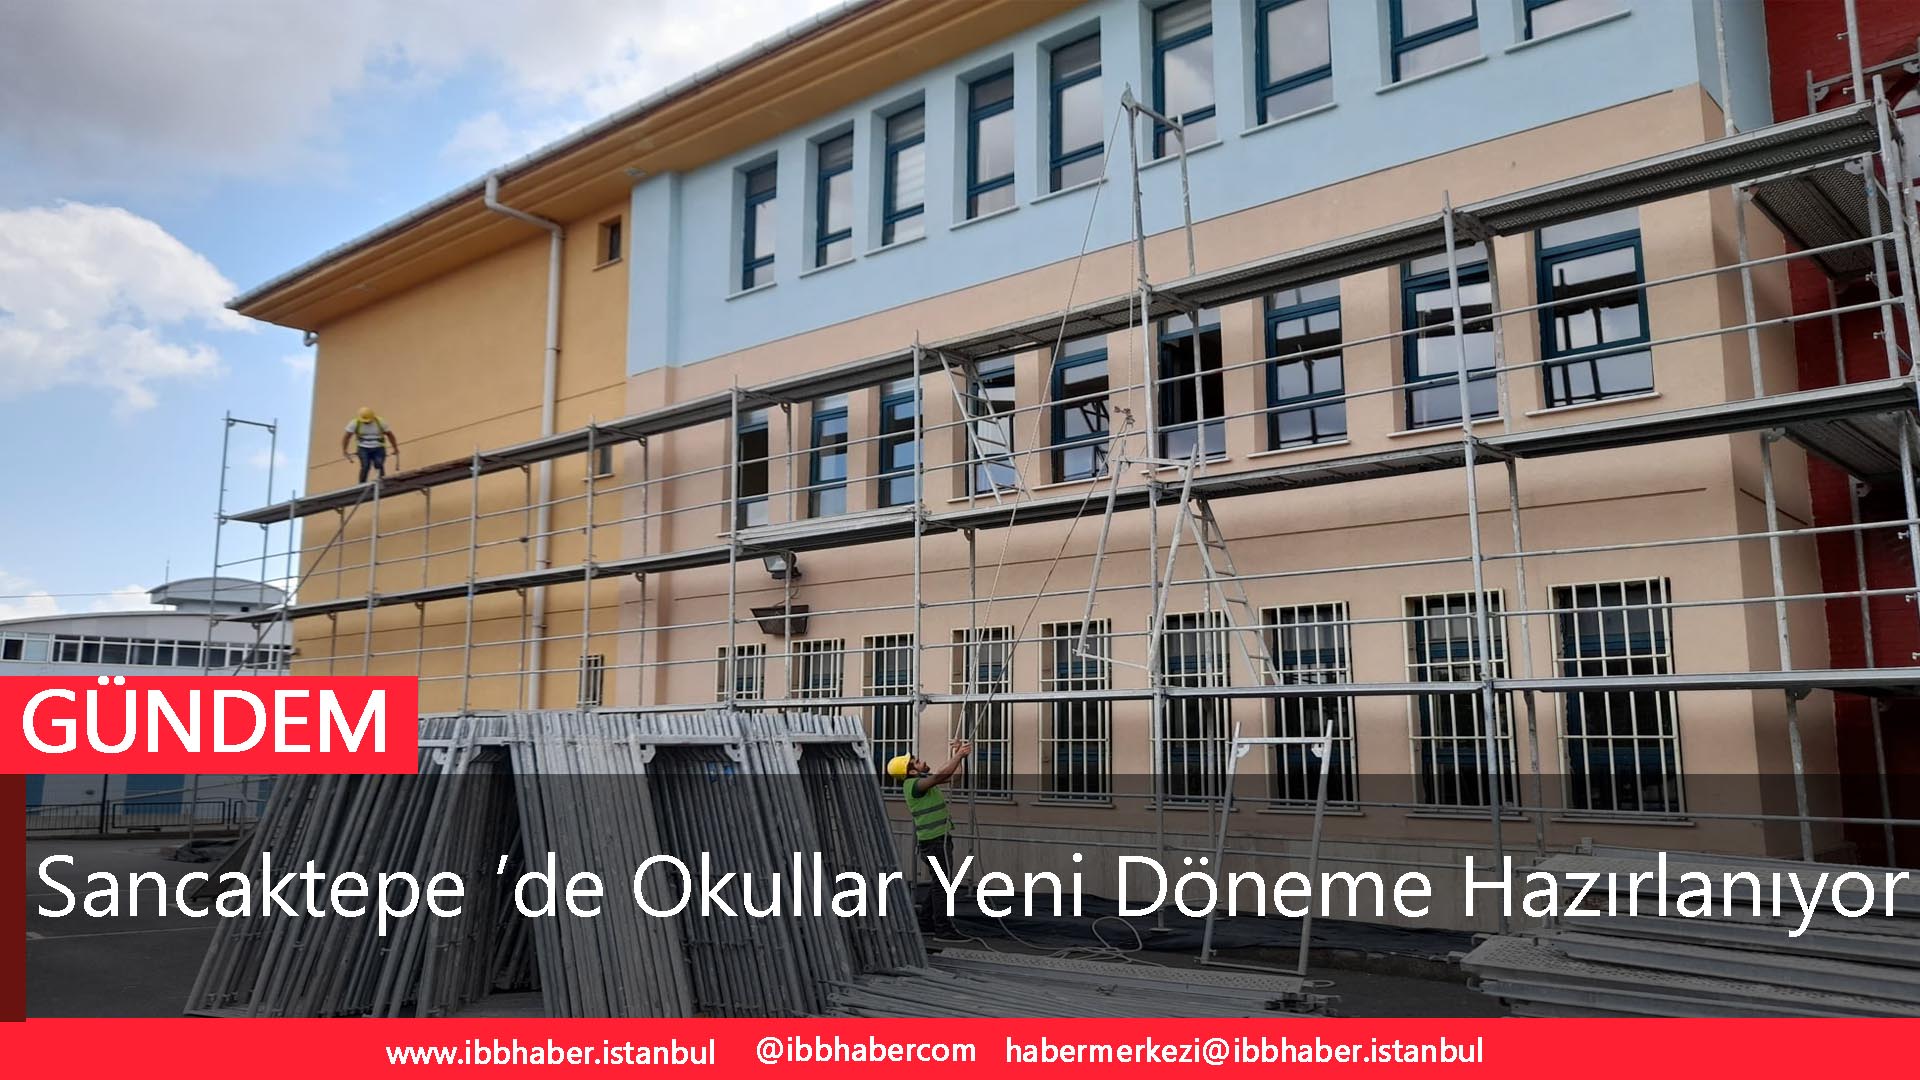 Sancaktepe ’de Okullar Yeni Döneme Hazırlanıyor